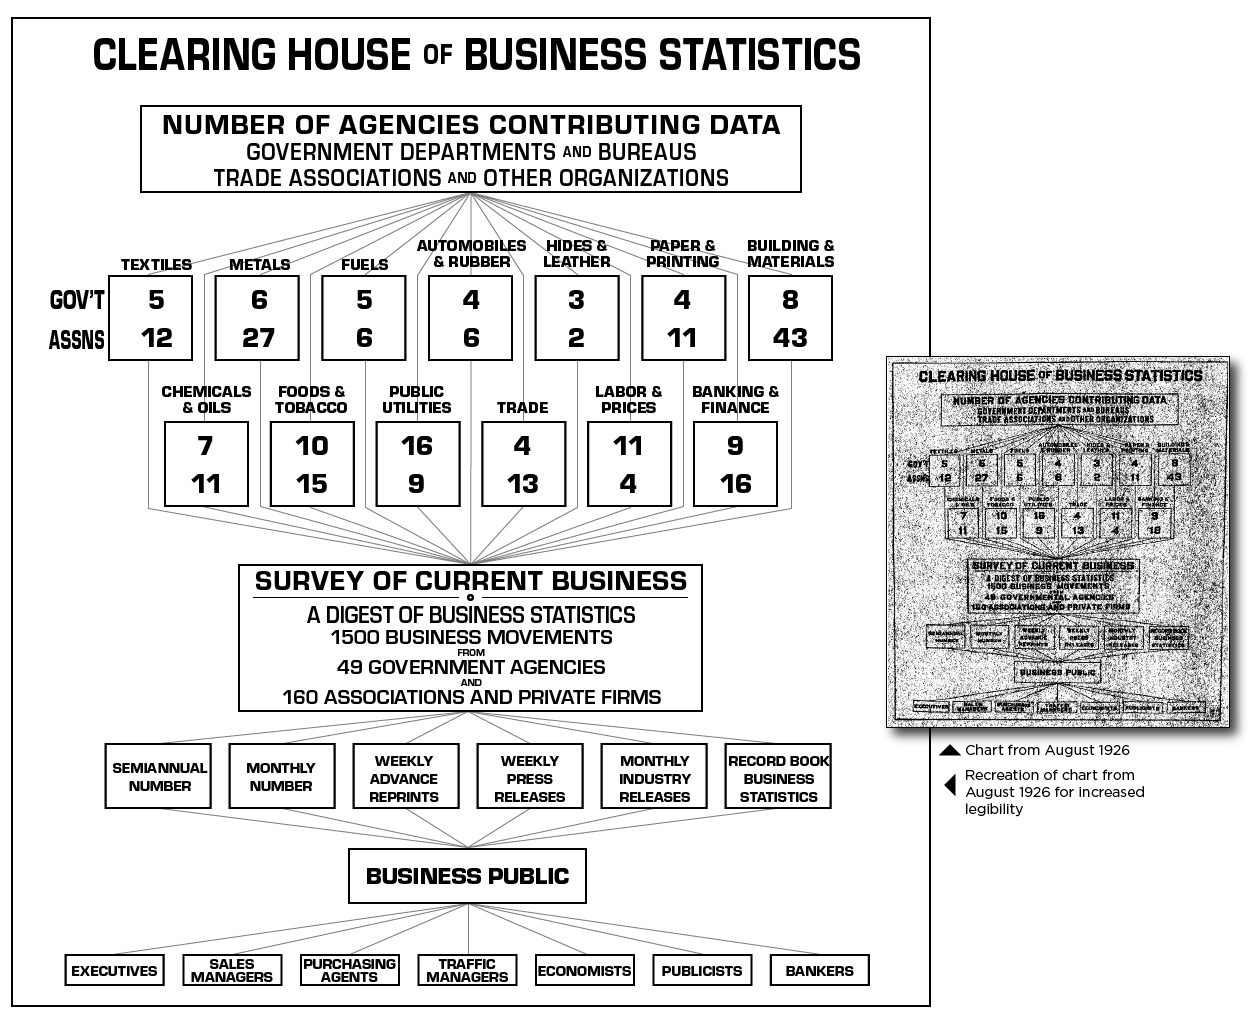 Organizational chart